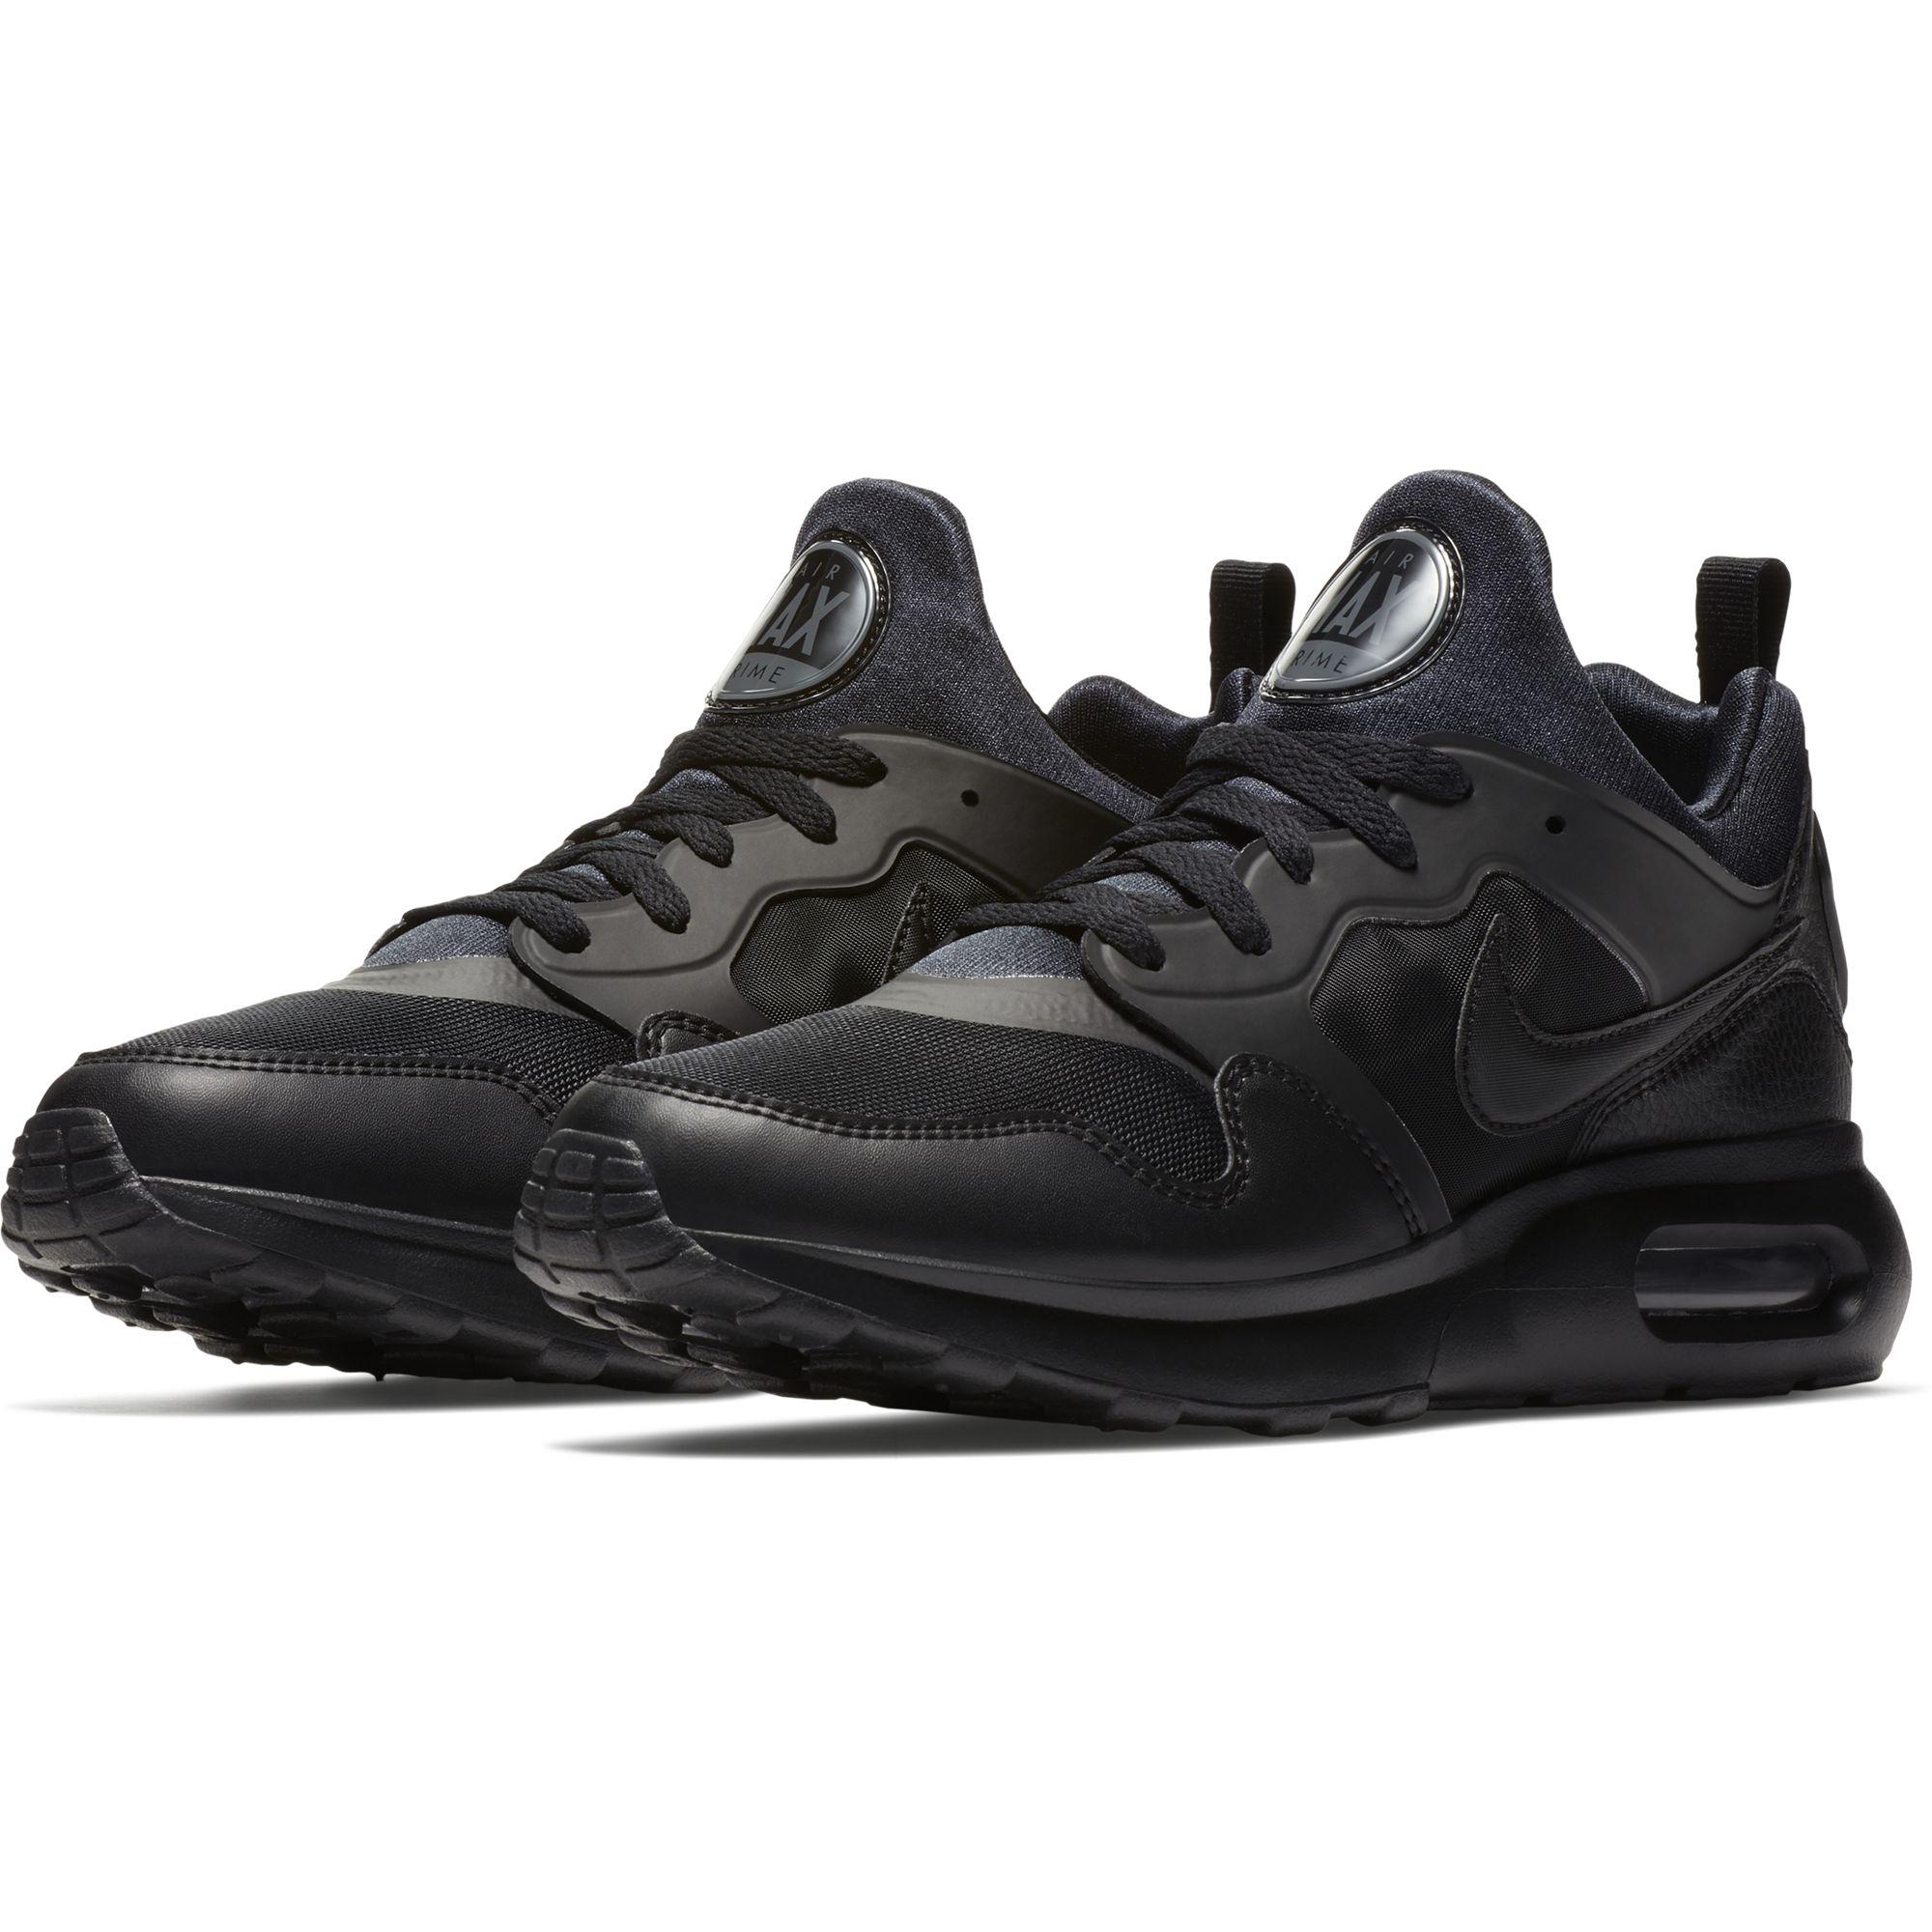 Nike Mens Air Max Prime Shoes - Black/Dark Grey - www.waldenwongart.com